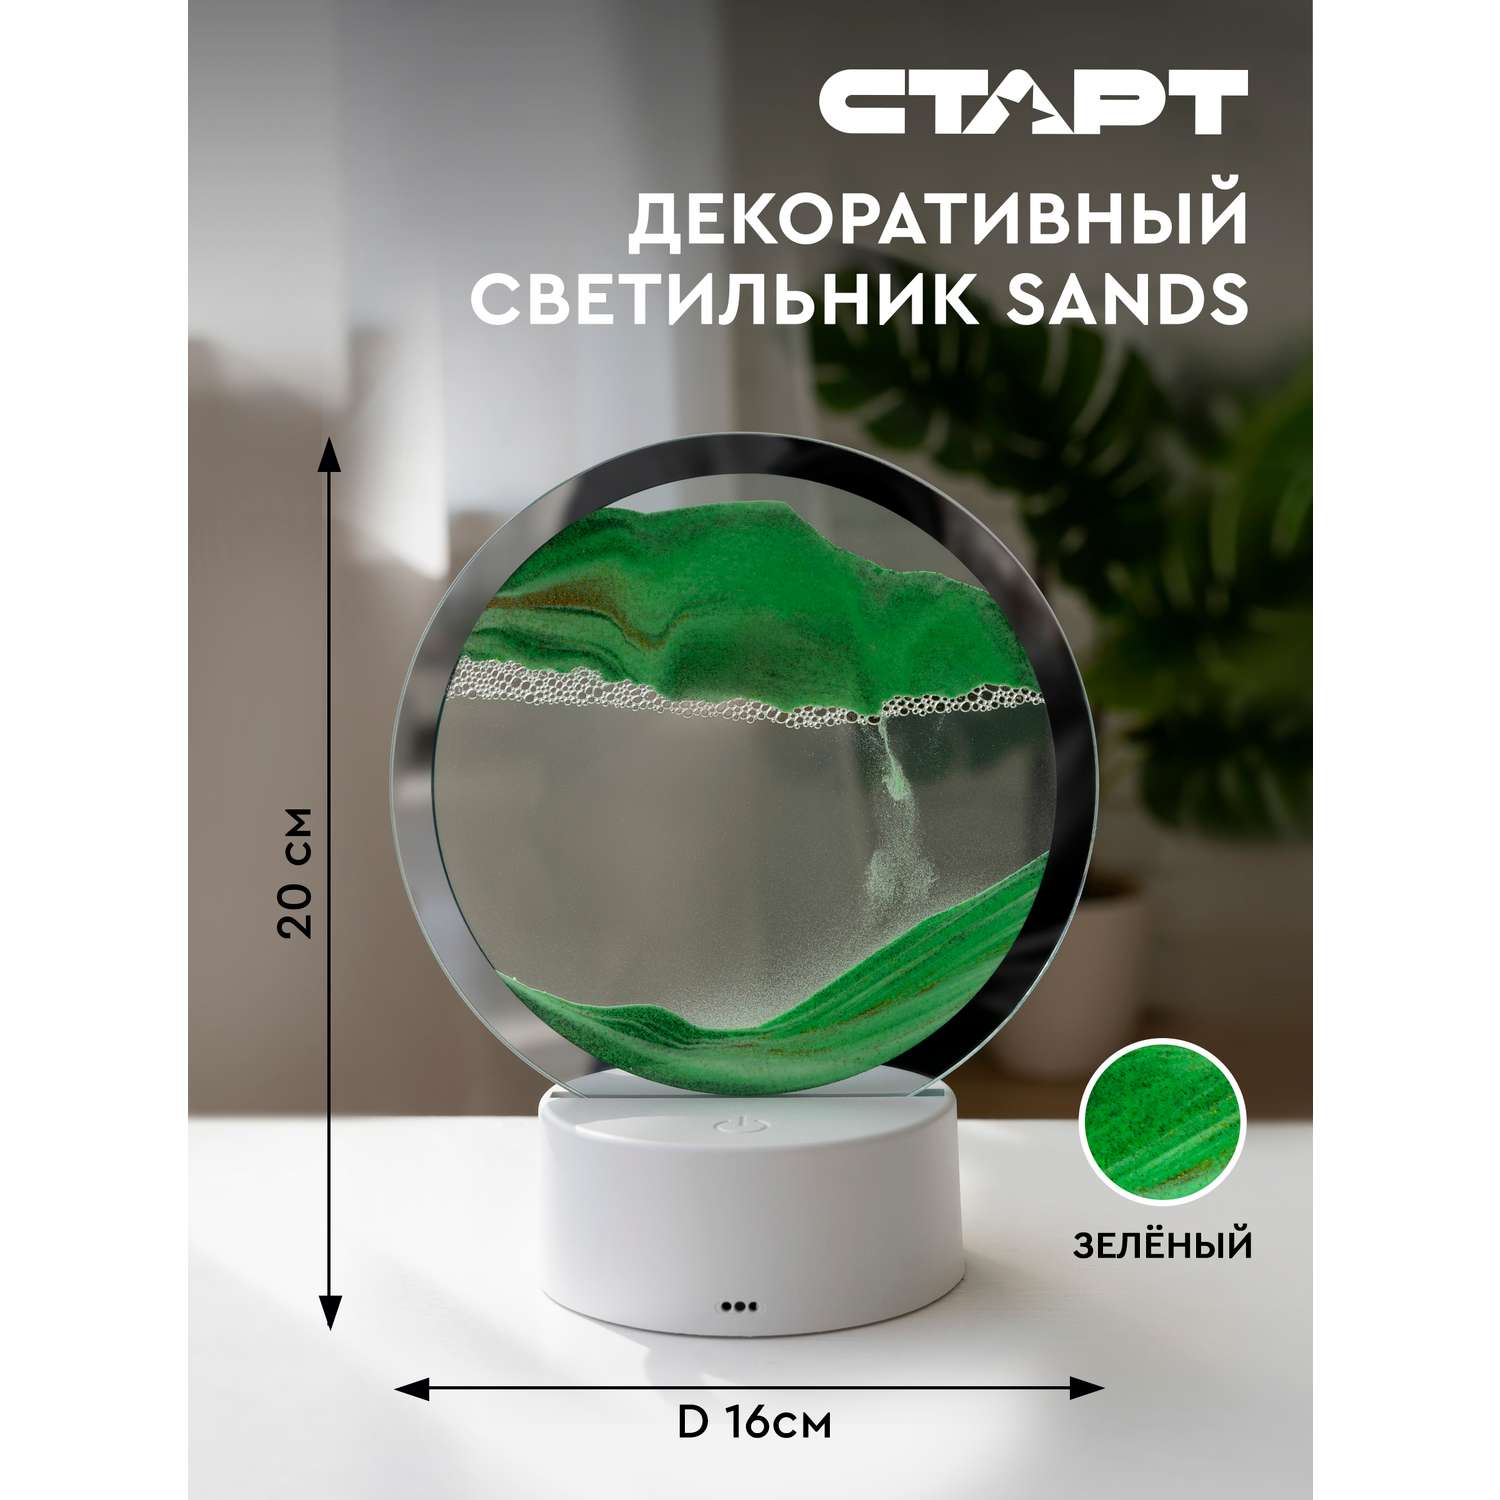 Светильник ночник СТАРТ декоративный серии Sands с песком зеленого цвета - фото 2